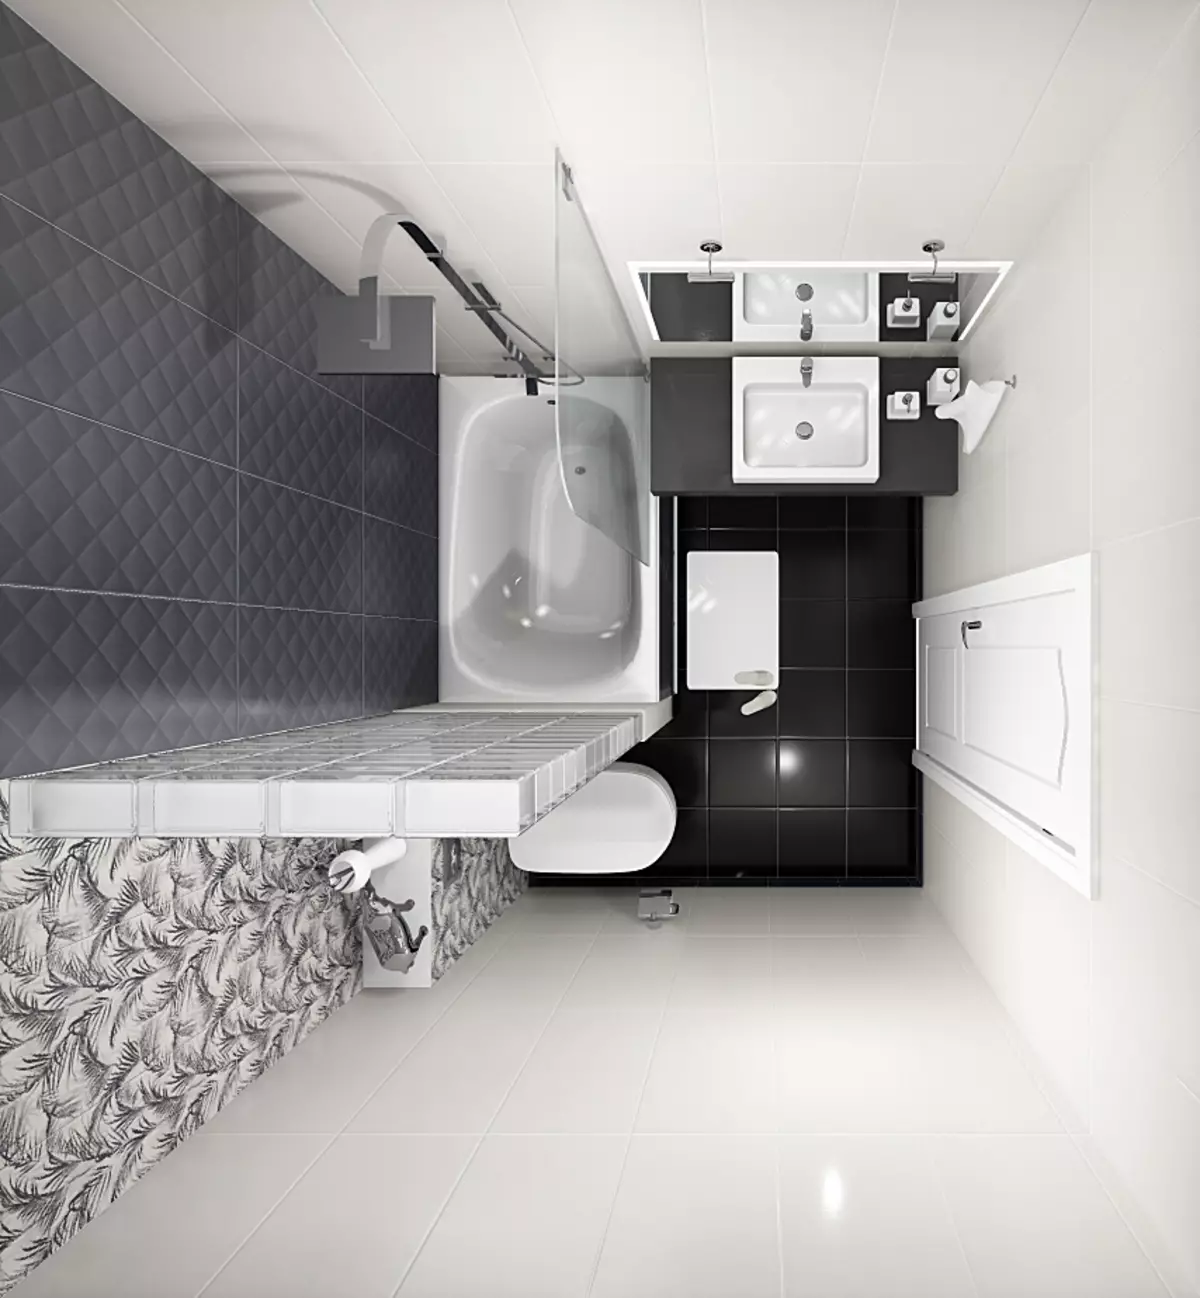 Design vu kombinéiert Buedzëmmer 6 Quadratmeter. M (77 Fotoen): Interieur Design mat Toilette, Bad Layout 2 bis 3 Meter 10454_11